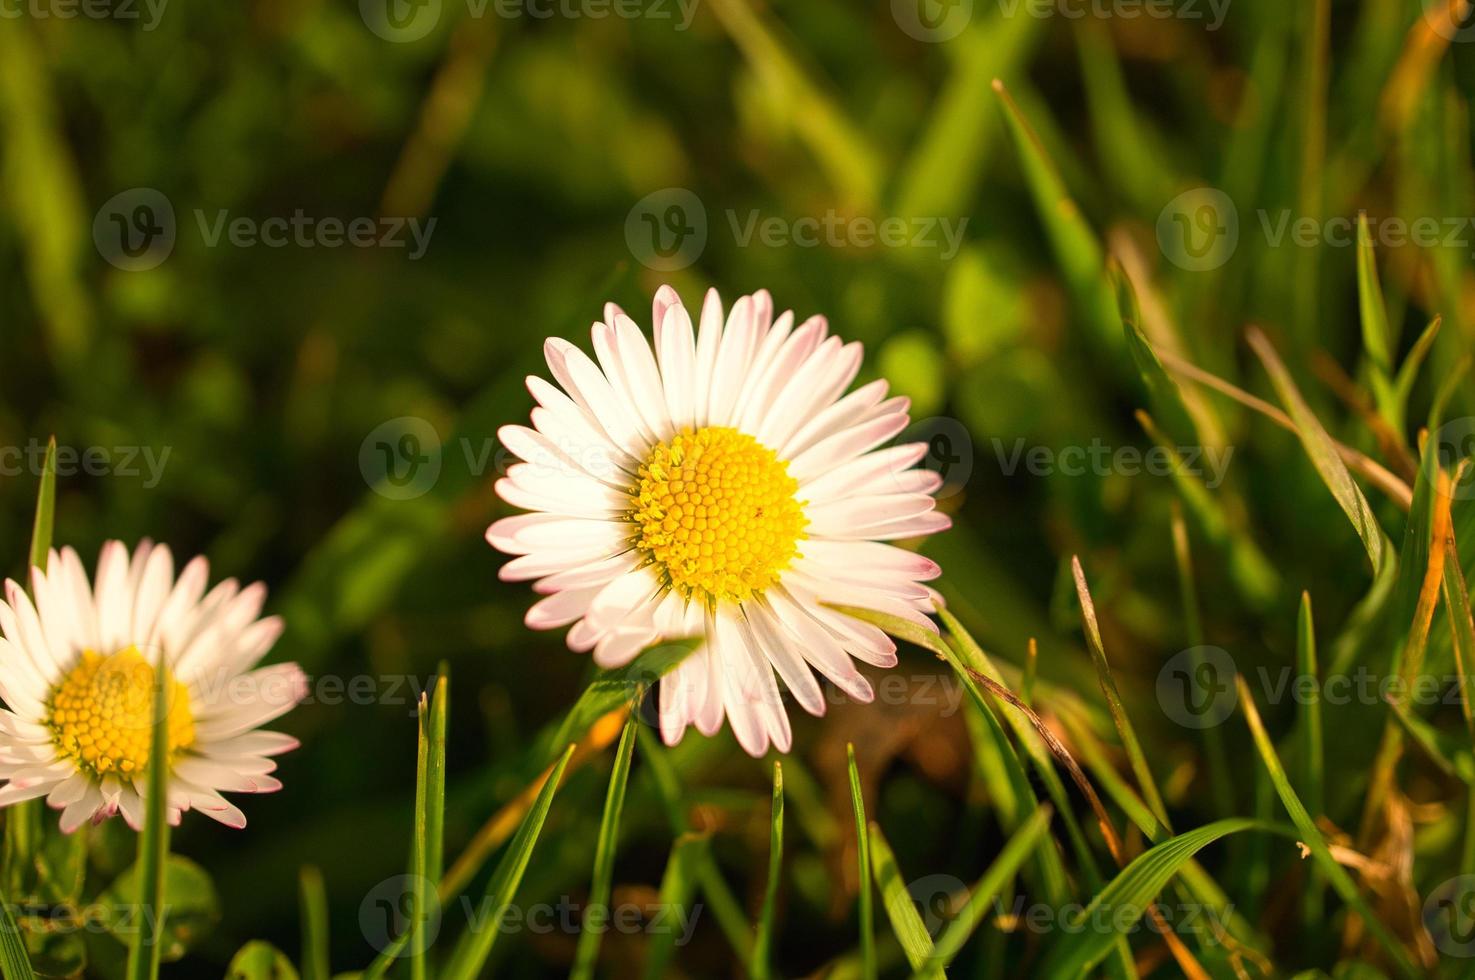 margaritas en un prado. flores rosas blancas en el prado verde. foto de flores